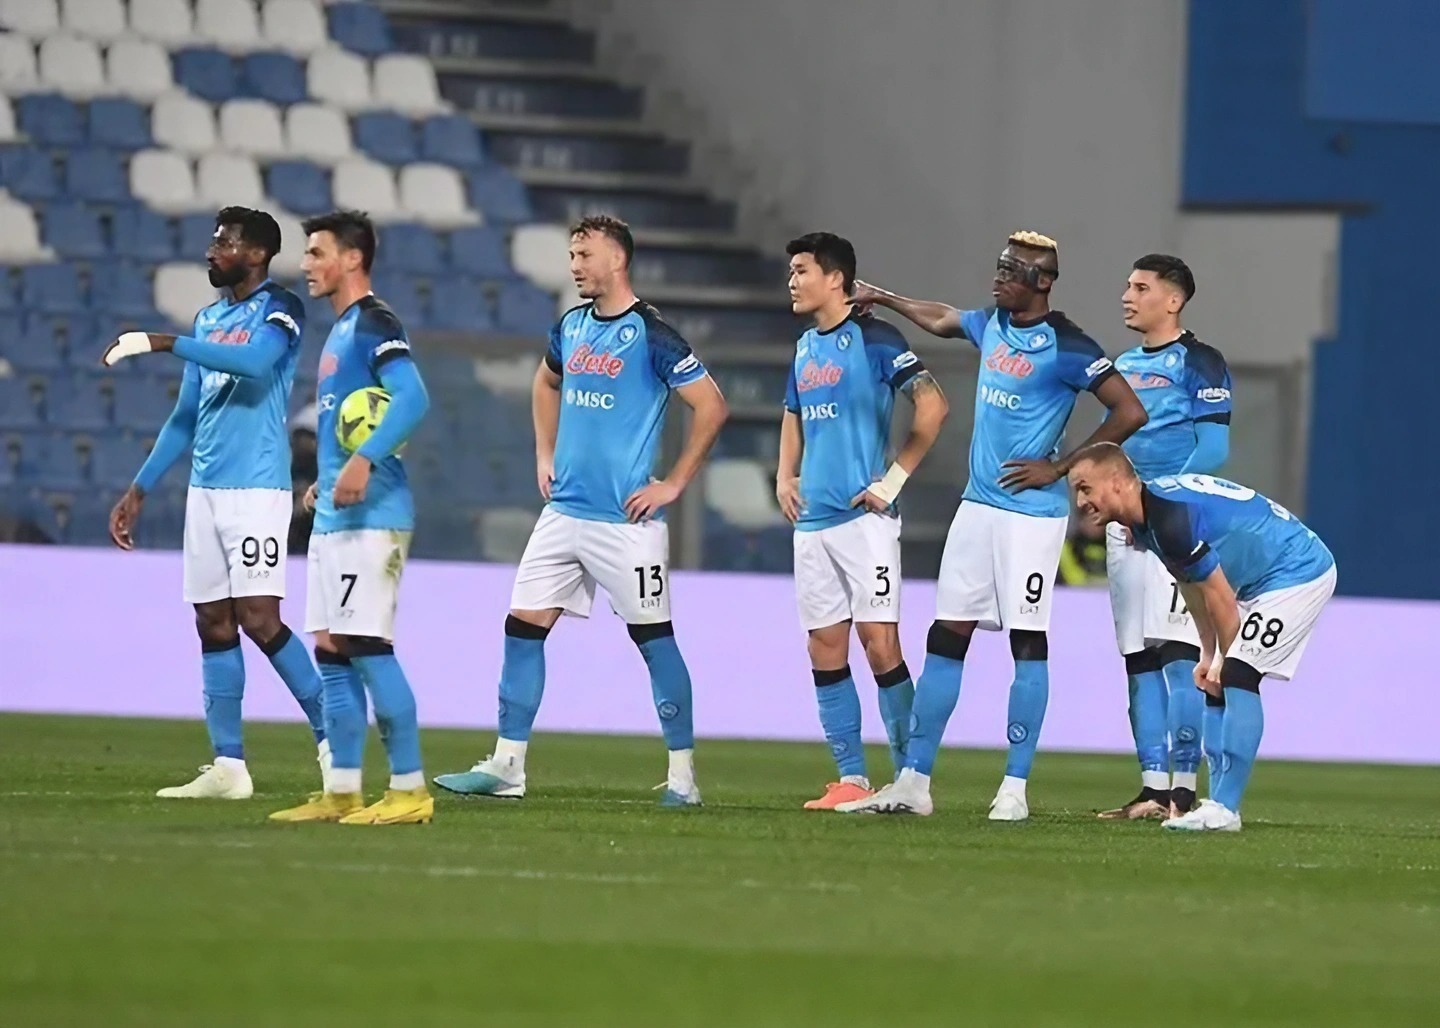 Calciatori SSC Napoli durante una partita